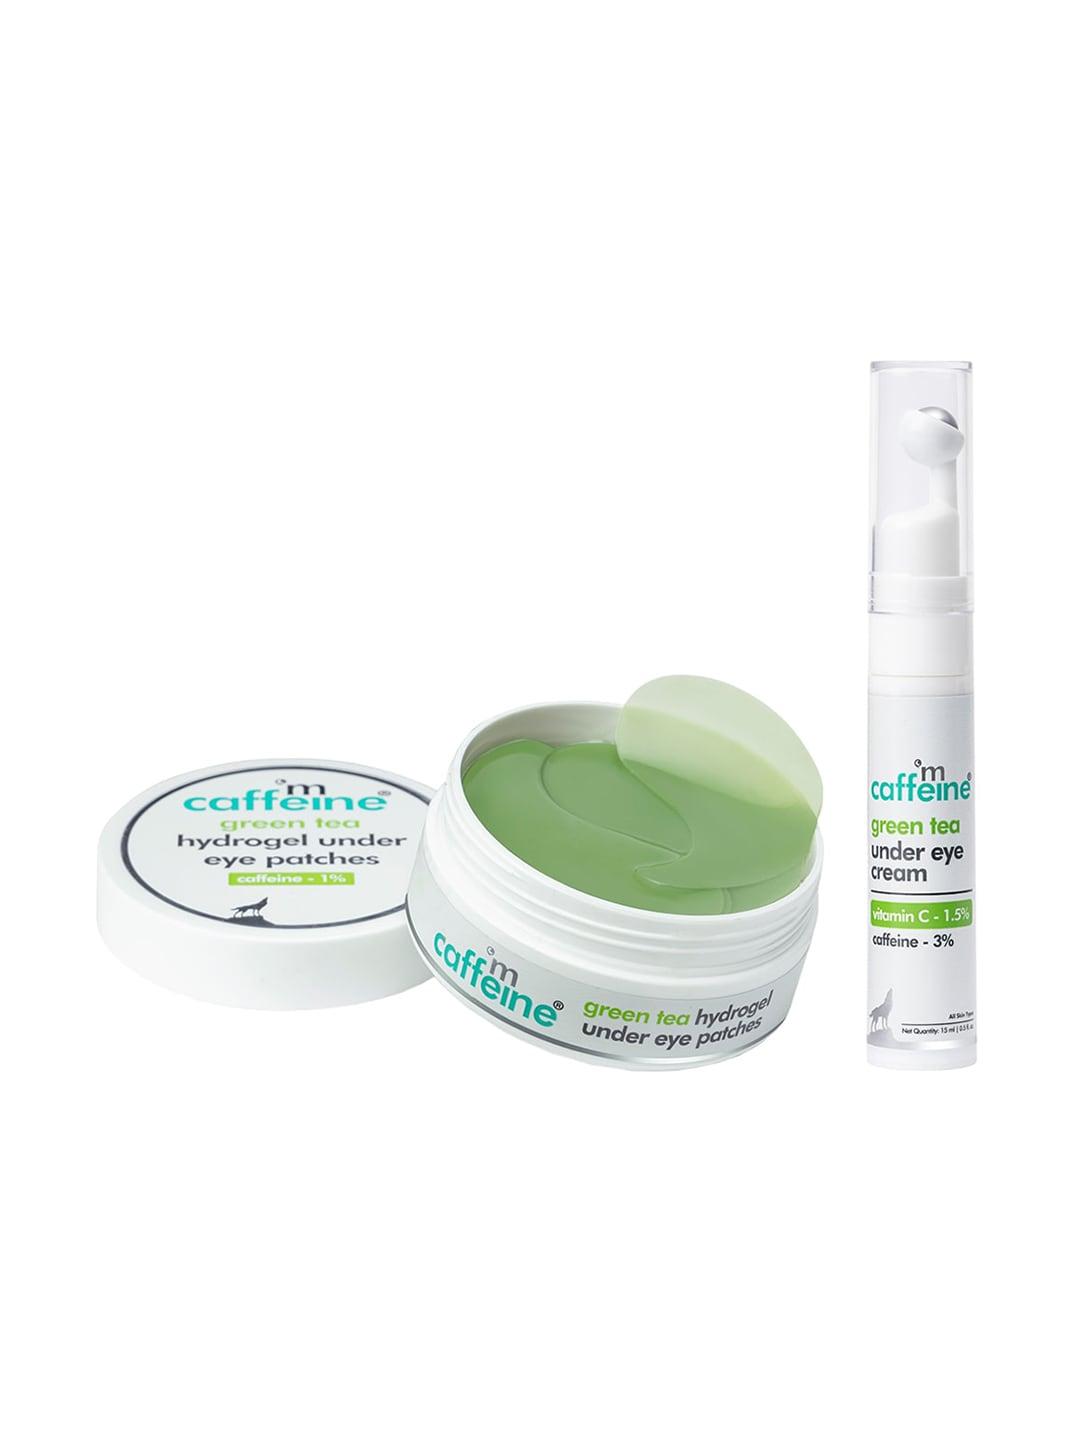 MCaffeine Green Tea Under Eye Care Kit - Under Eye Cream & Hydrogel Under Eye Patches